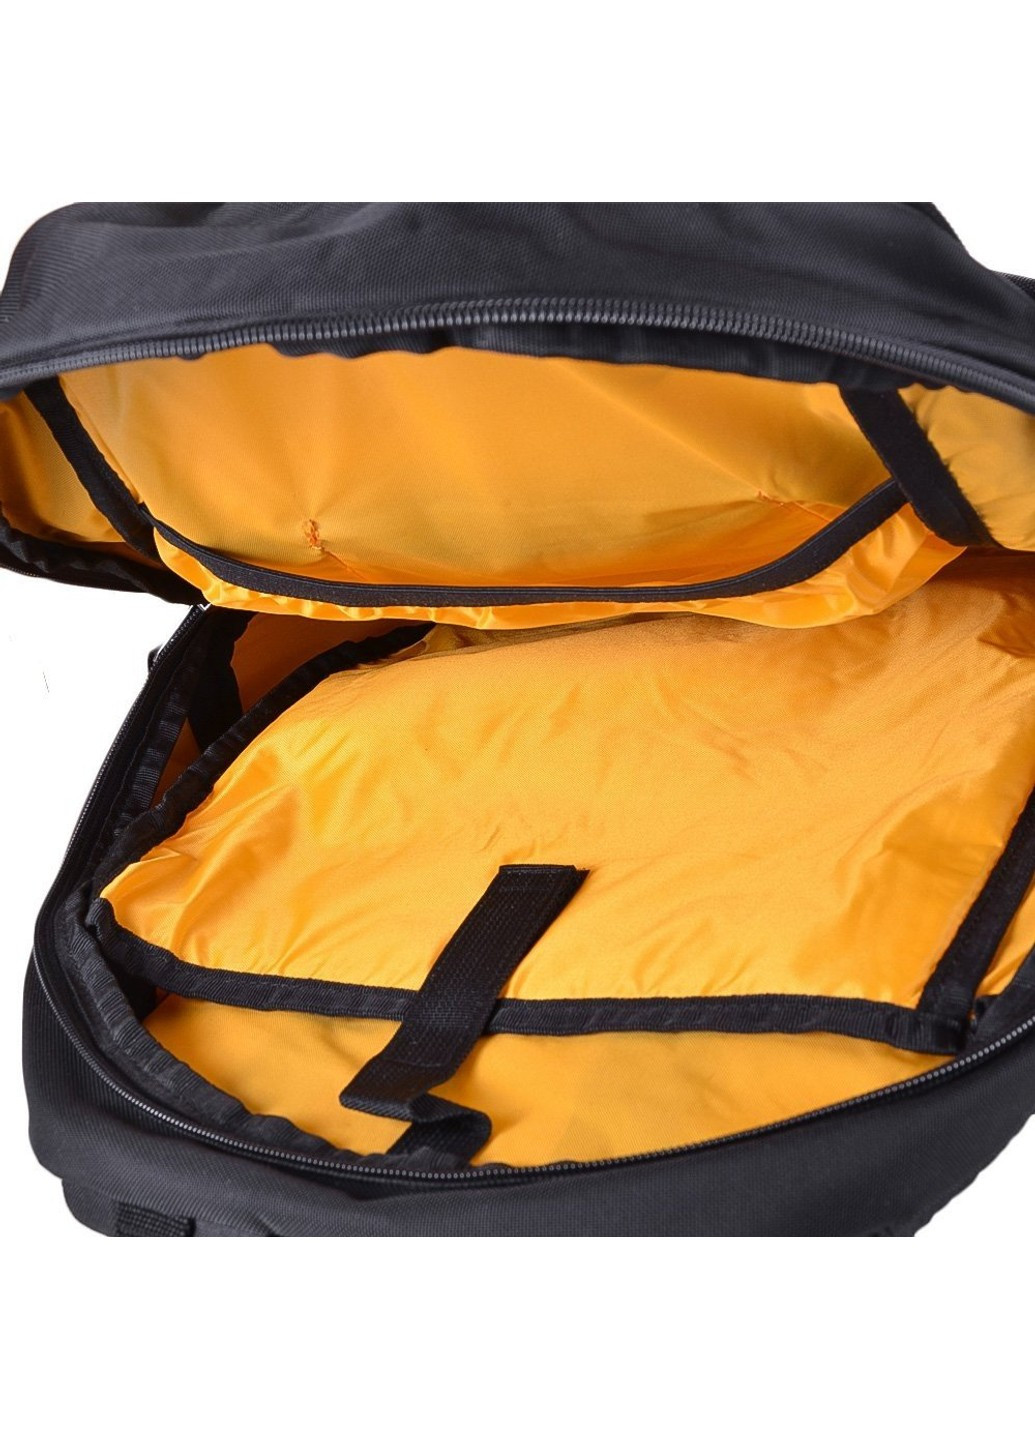 Городской рюкзак для ноутбука w1077-yellow Onepolar (264478184)